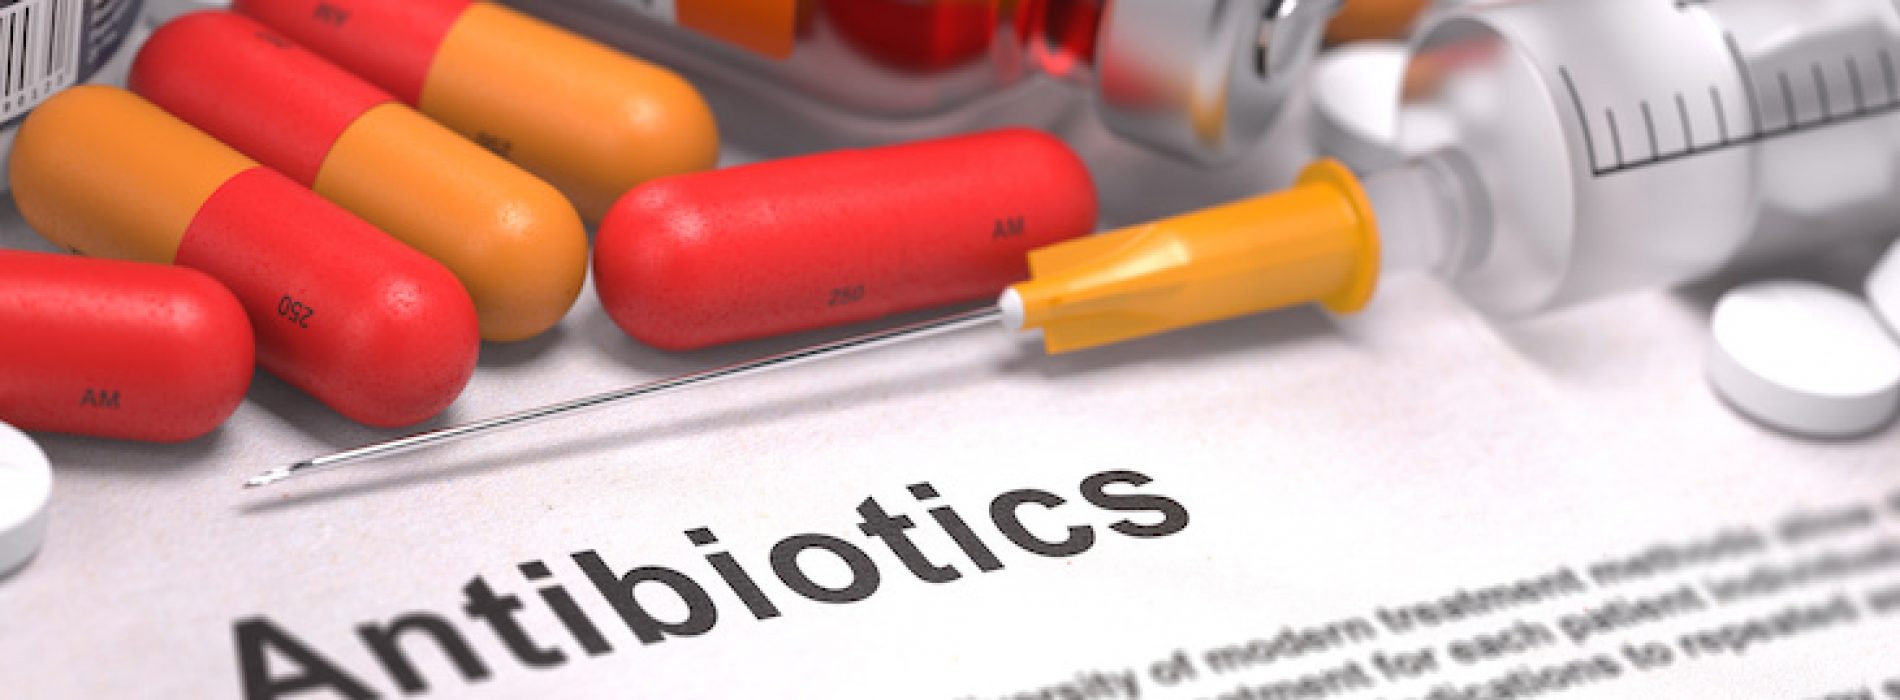 Gebruik van antibiotica vroeg in het leven verhoogt het risico op inflammatoire darmaandoeningen